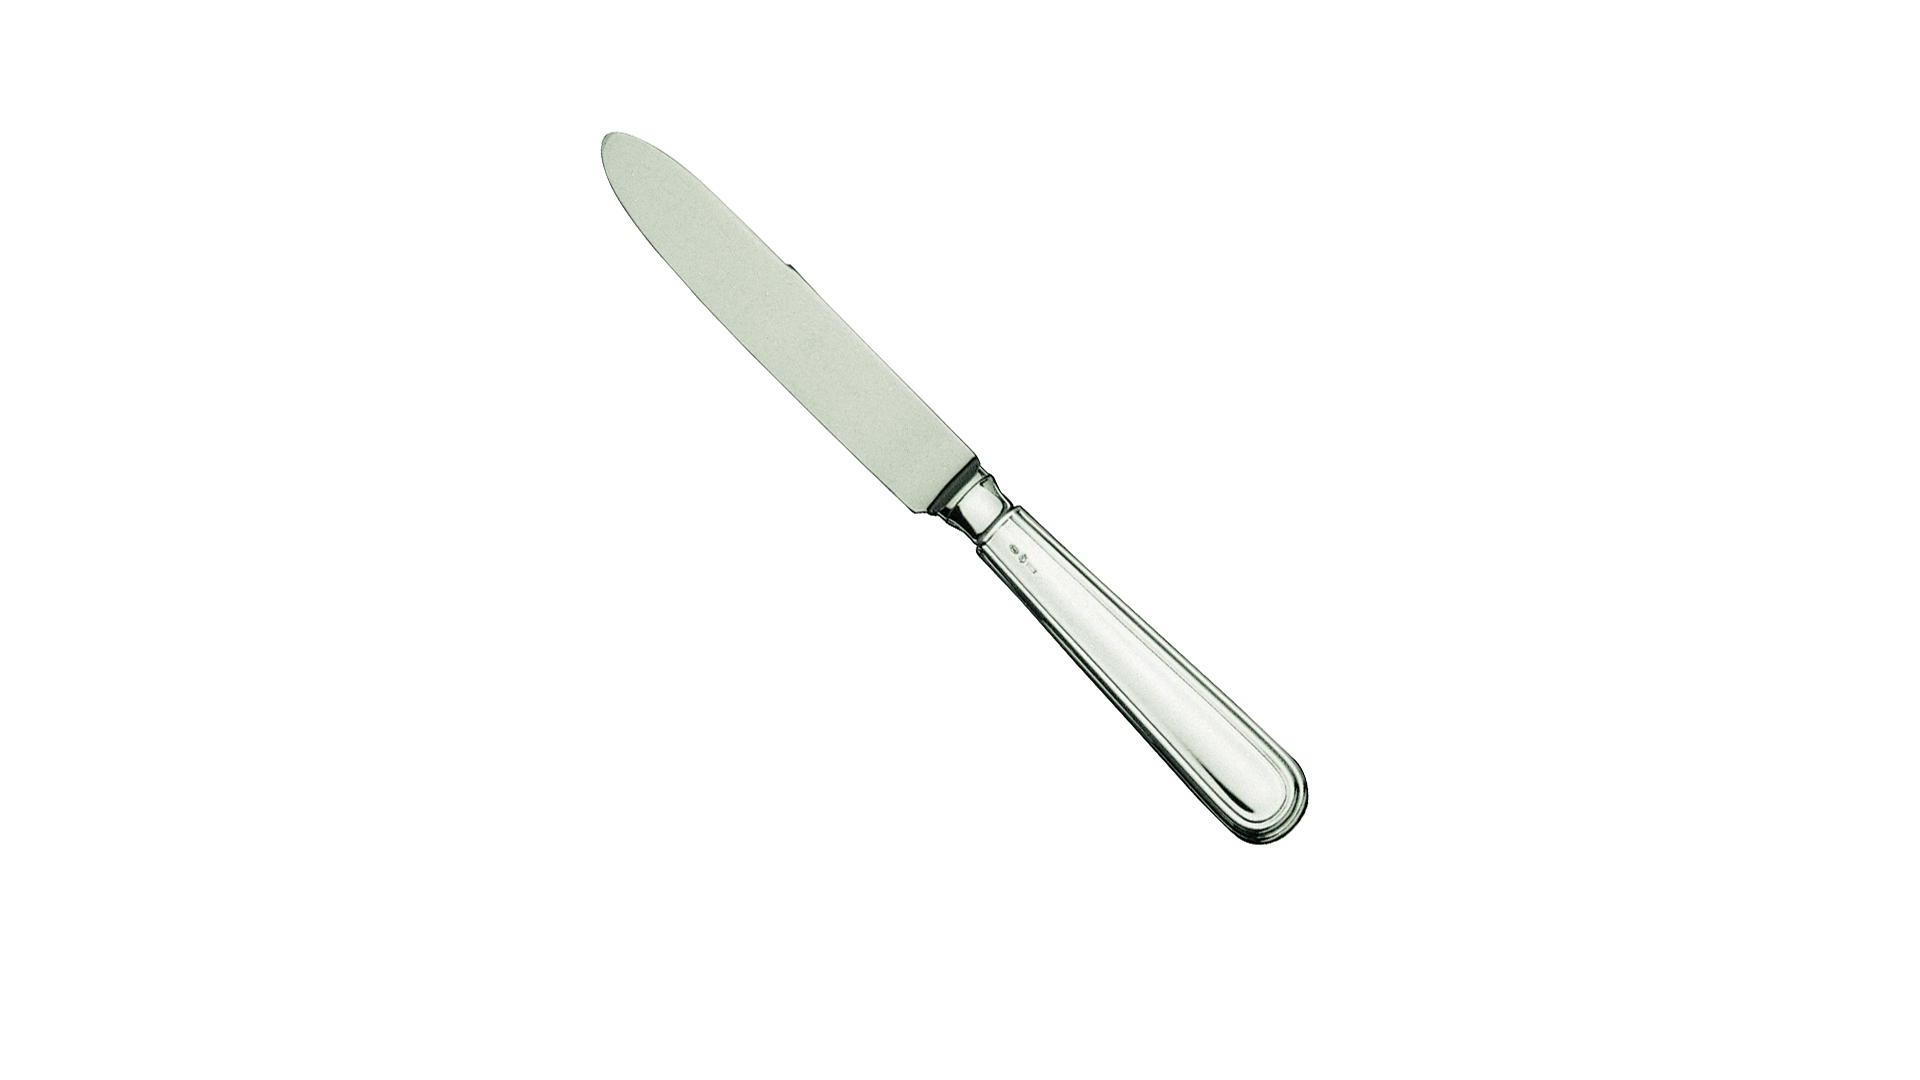 Нож десертный 22 см Schiavon Инглезе, серебро 925пр